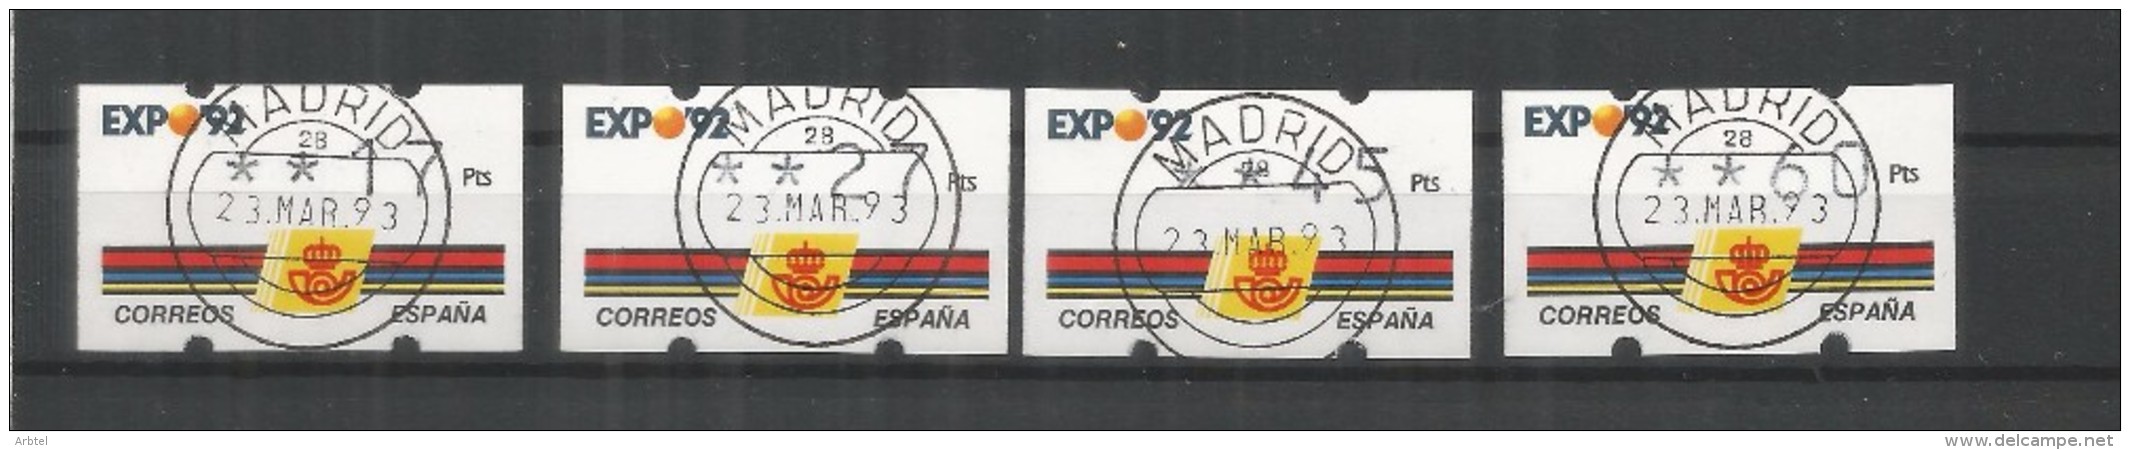 ATM KLUSENDORF EXPO 92 4 DIGITOS 4 VALORES CON MATASELLOS - 1992 – Sevilla (Spanien)